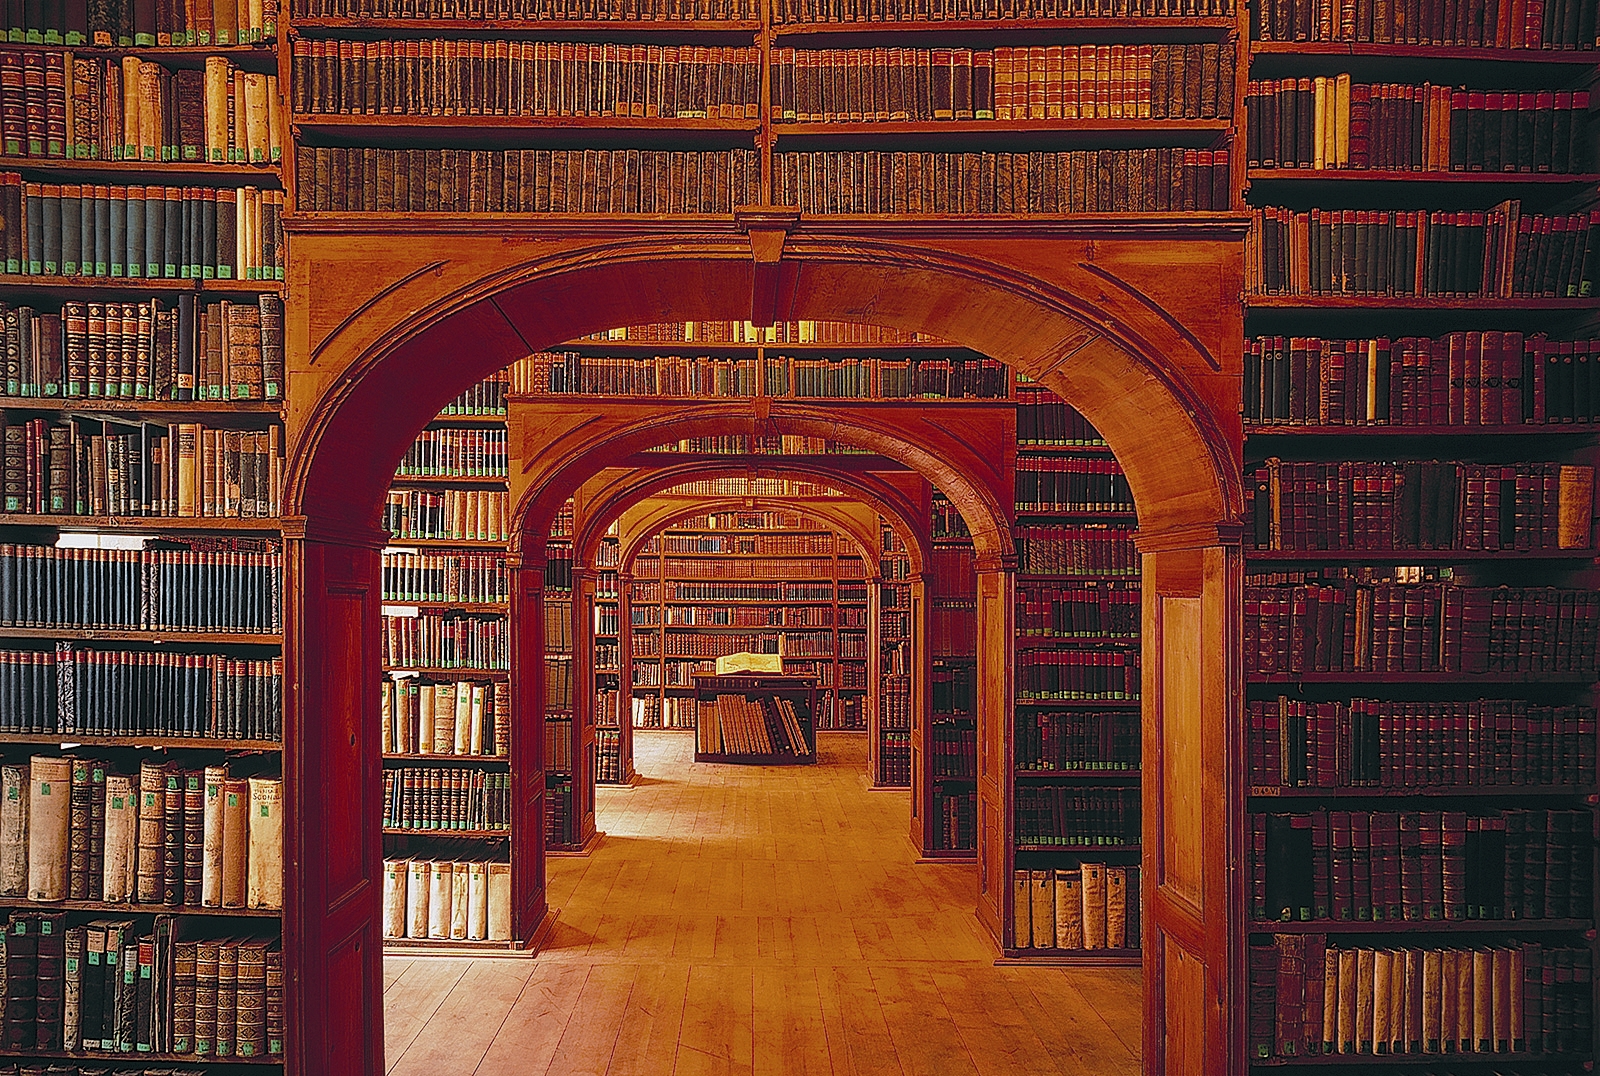 Библиотека старых учебников. Библиотека науки, Герлиц, Германия. Библиотека город Гёрлиц Германия. Старинная библиотека. Библиотека фон.